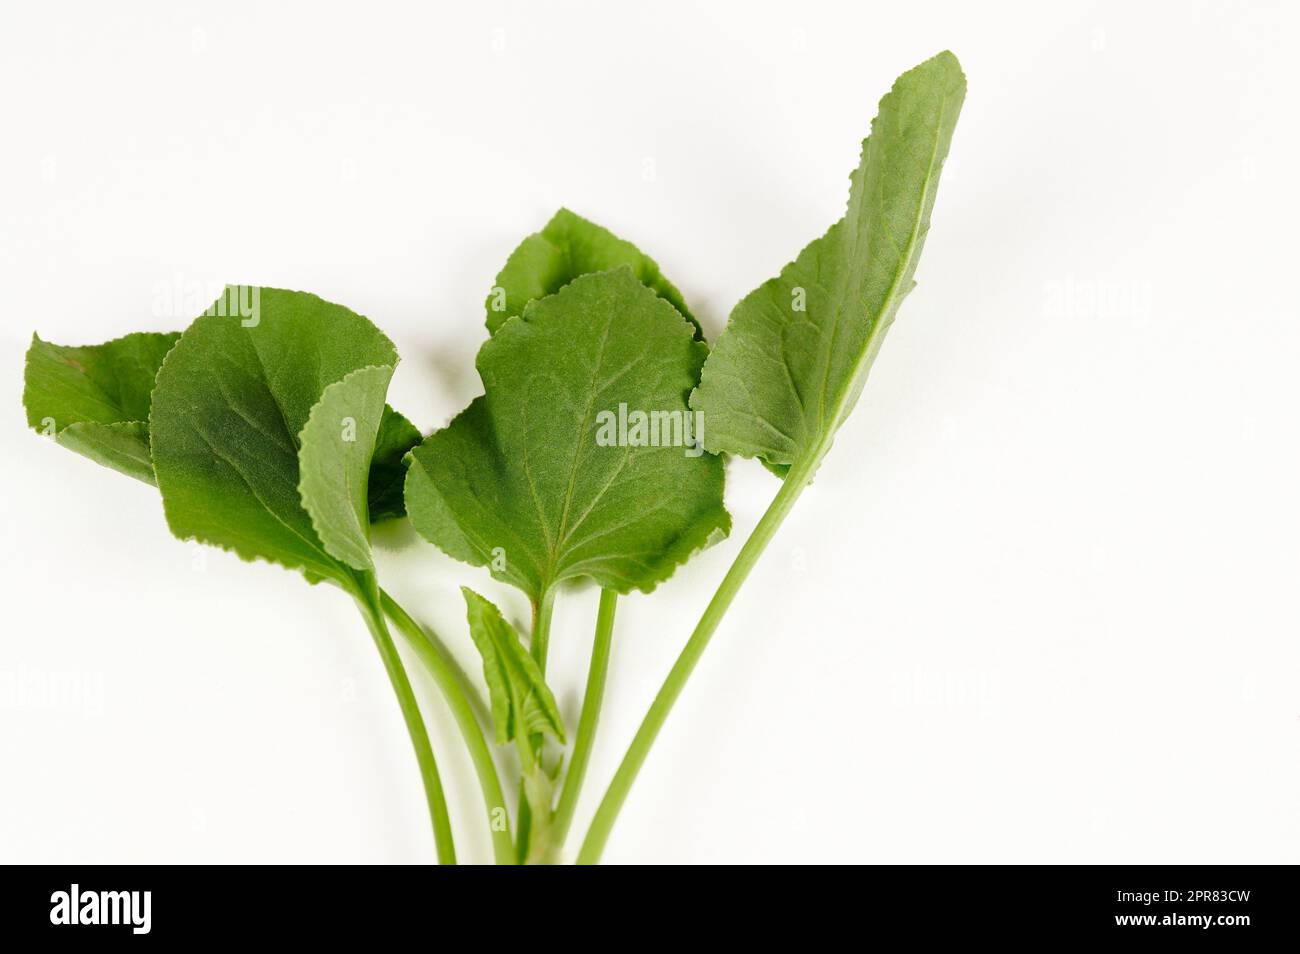 Green Sorrel leaves on white Stock Photo